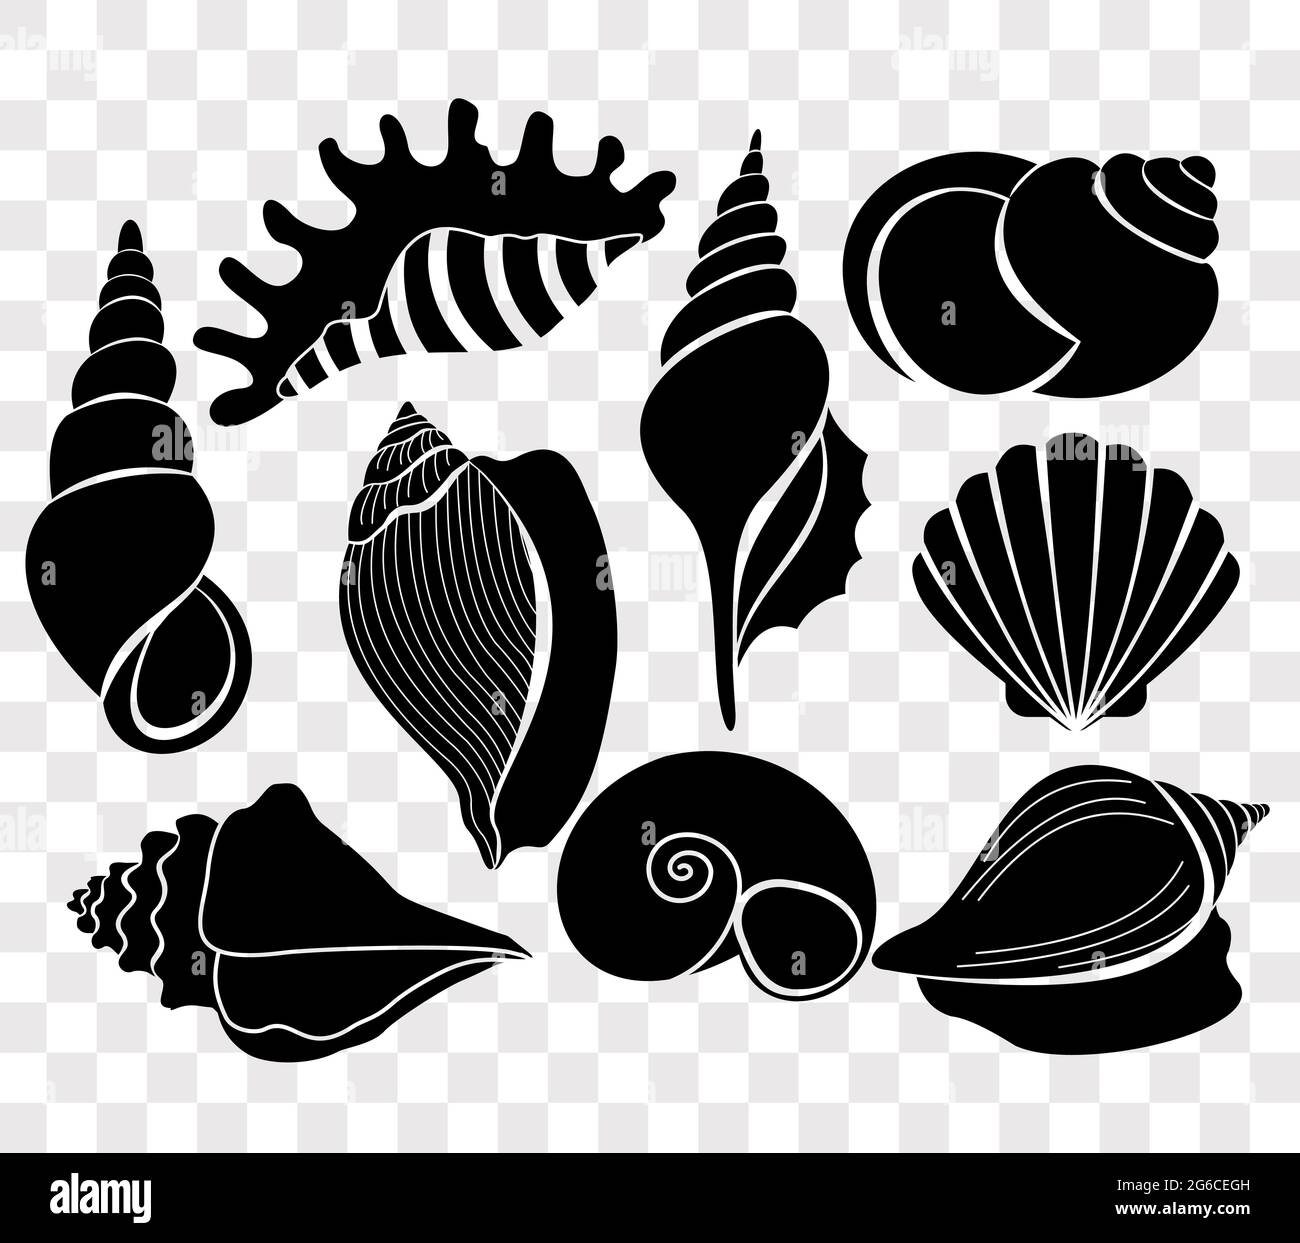 Vektor-Illustration Set von schönen Muscheln schwarzen Silhouetten isoliert auf transparentem Hintergrund. Stock Vektor